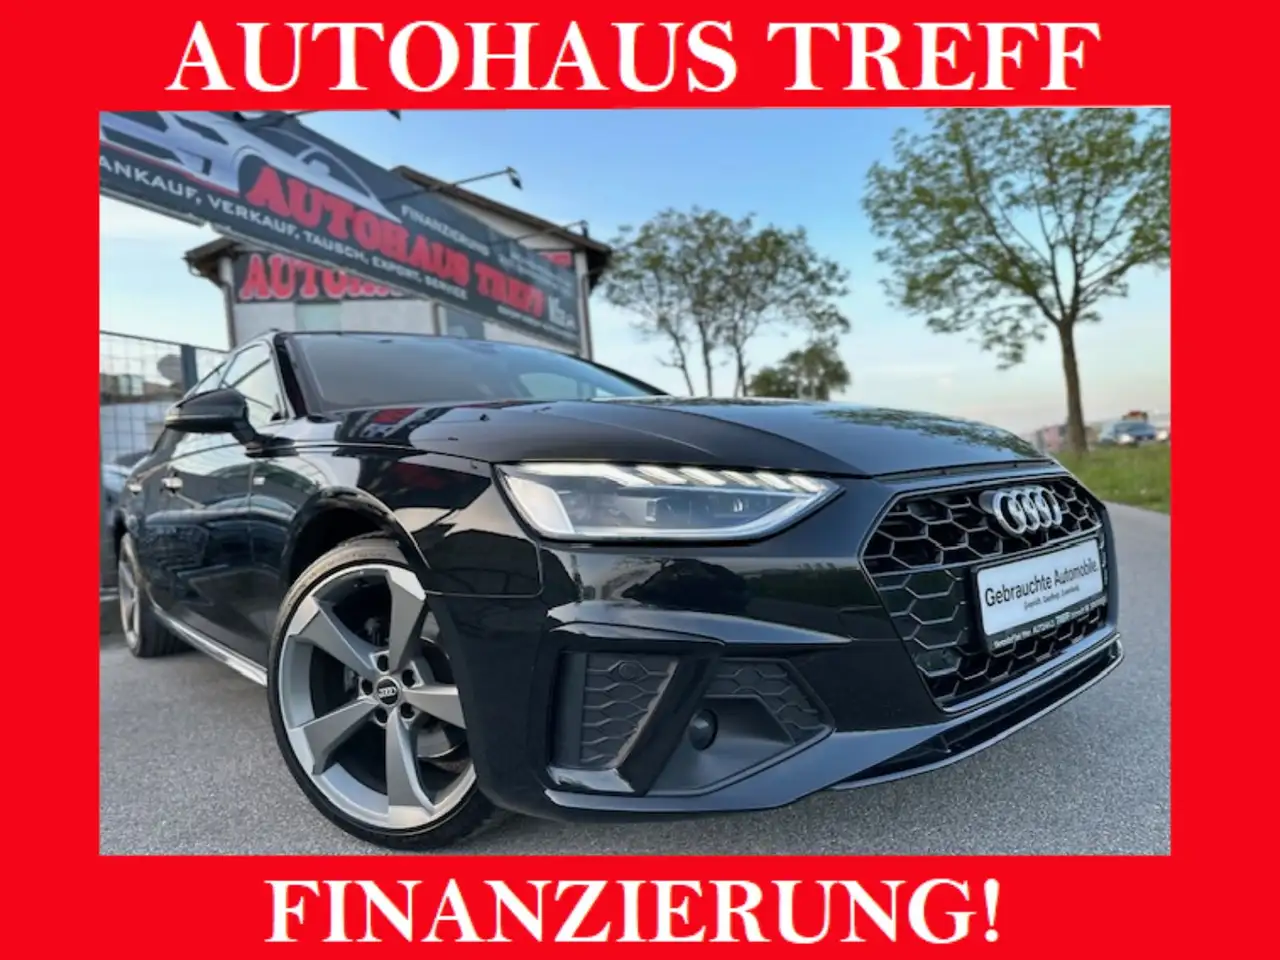 Audi A4 Break in Zwart tweedehands in Gerasdorf bei Wien voor € 27.900,-